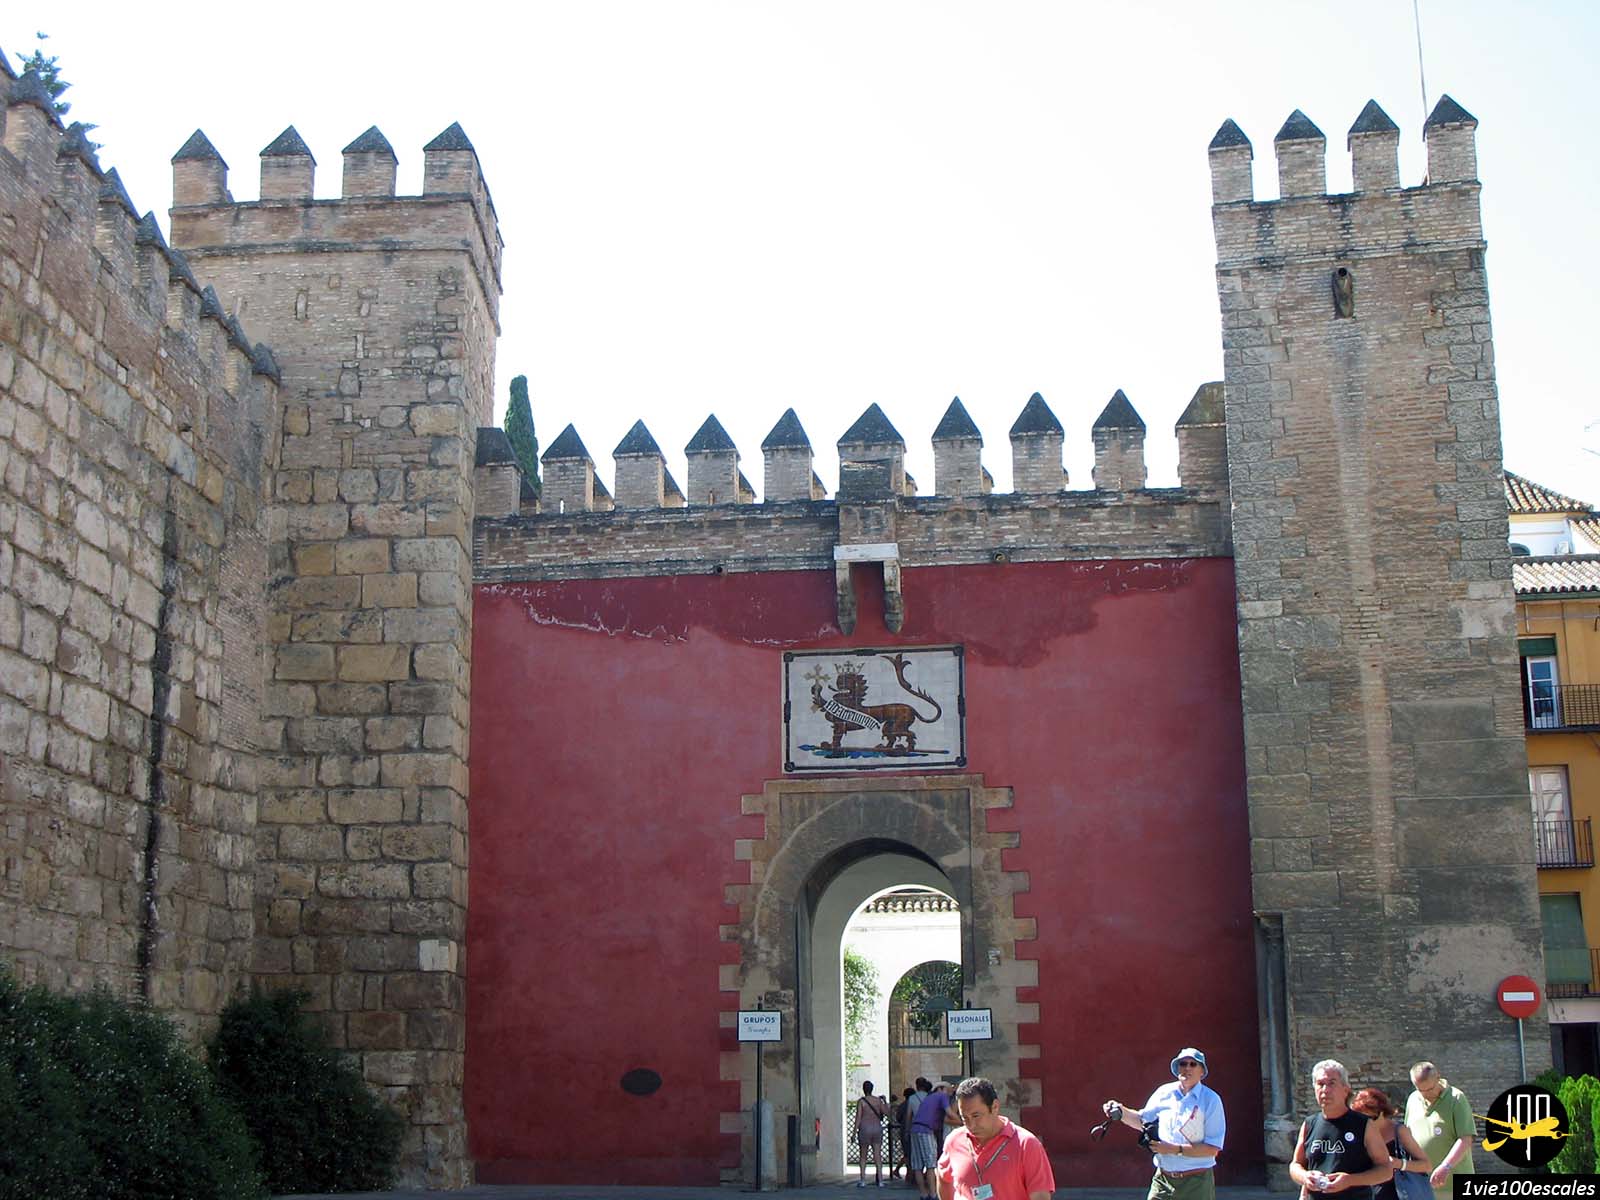 Entrée de l'alcazar royal de Séville construit au XIIe siècle, qui doit son nom au panneau de céramique représentant un lion qui la surmonte